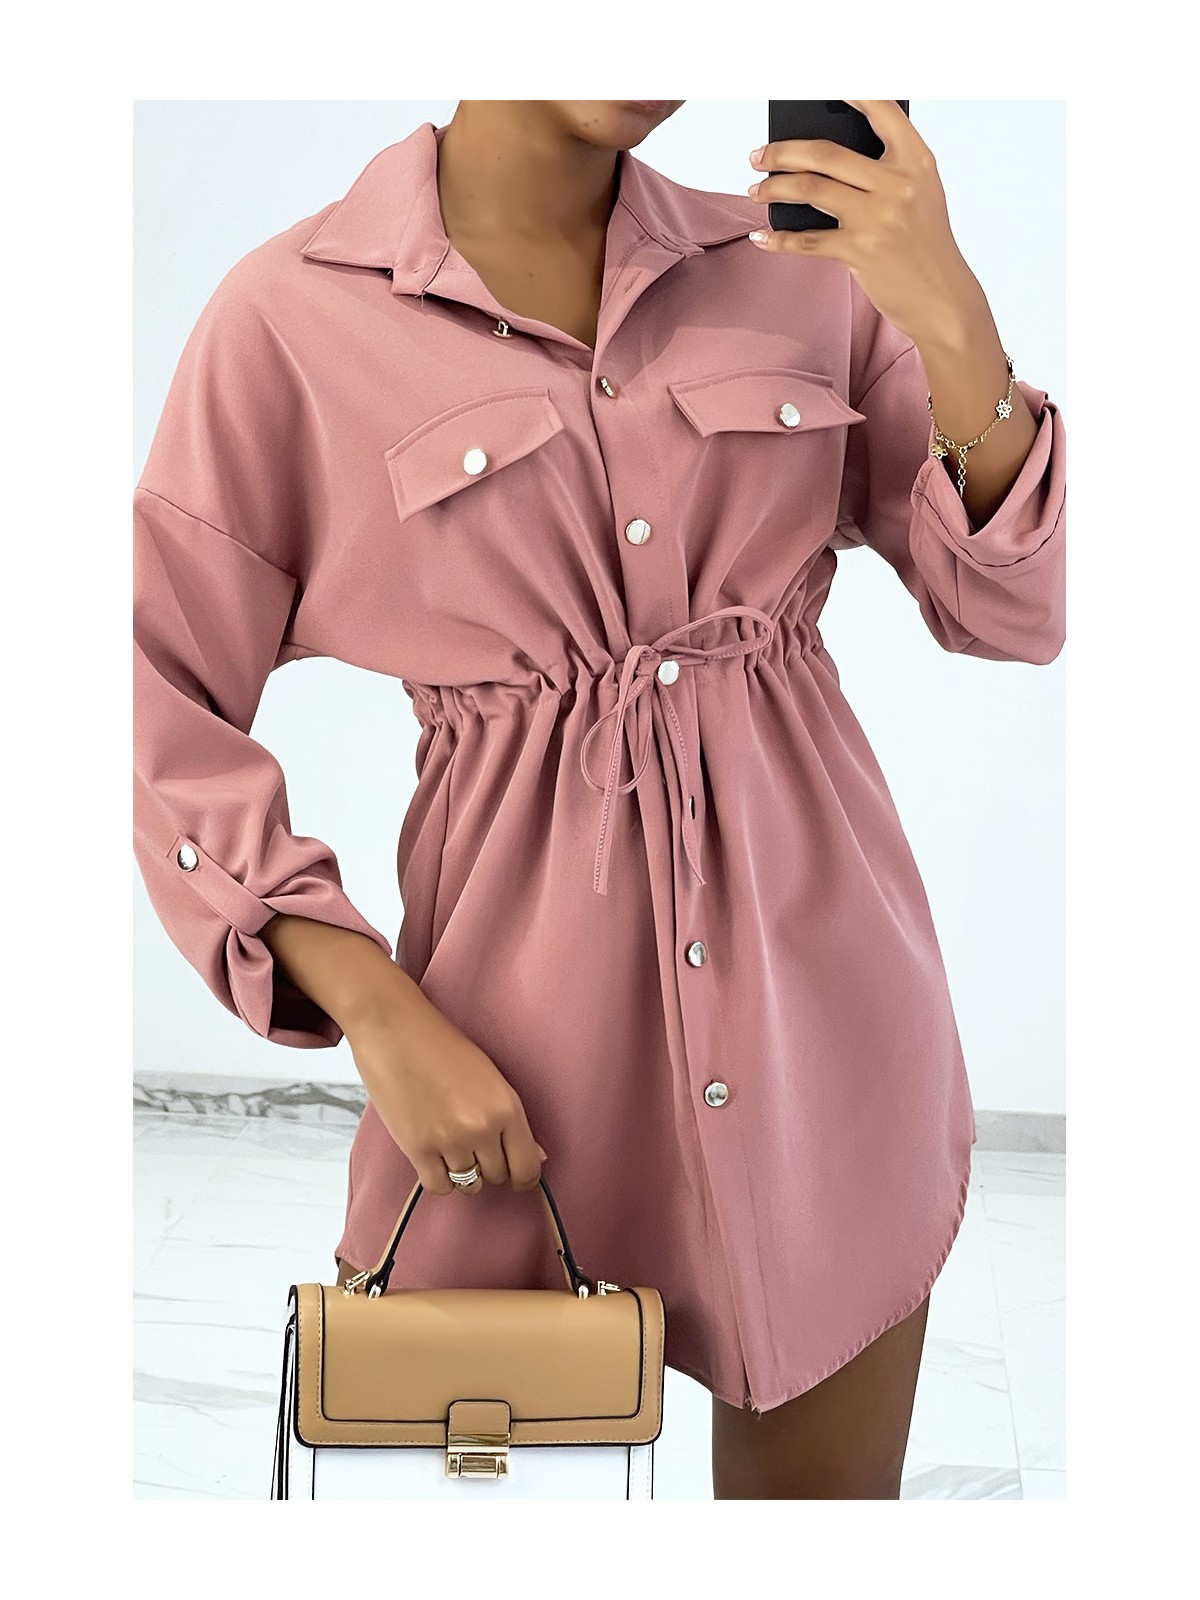 Robe-chemise unicolore rose à poches style safari. - 1